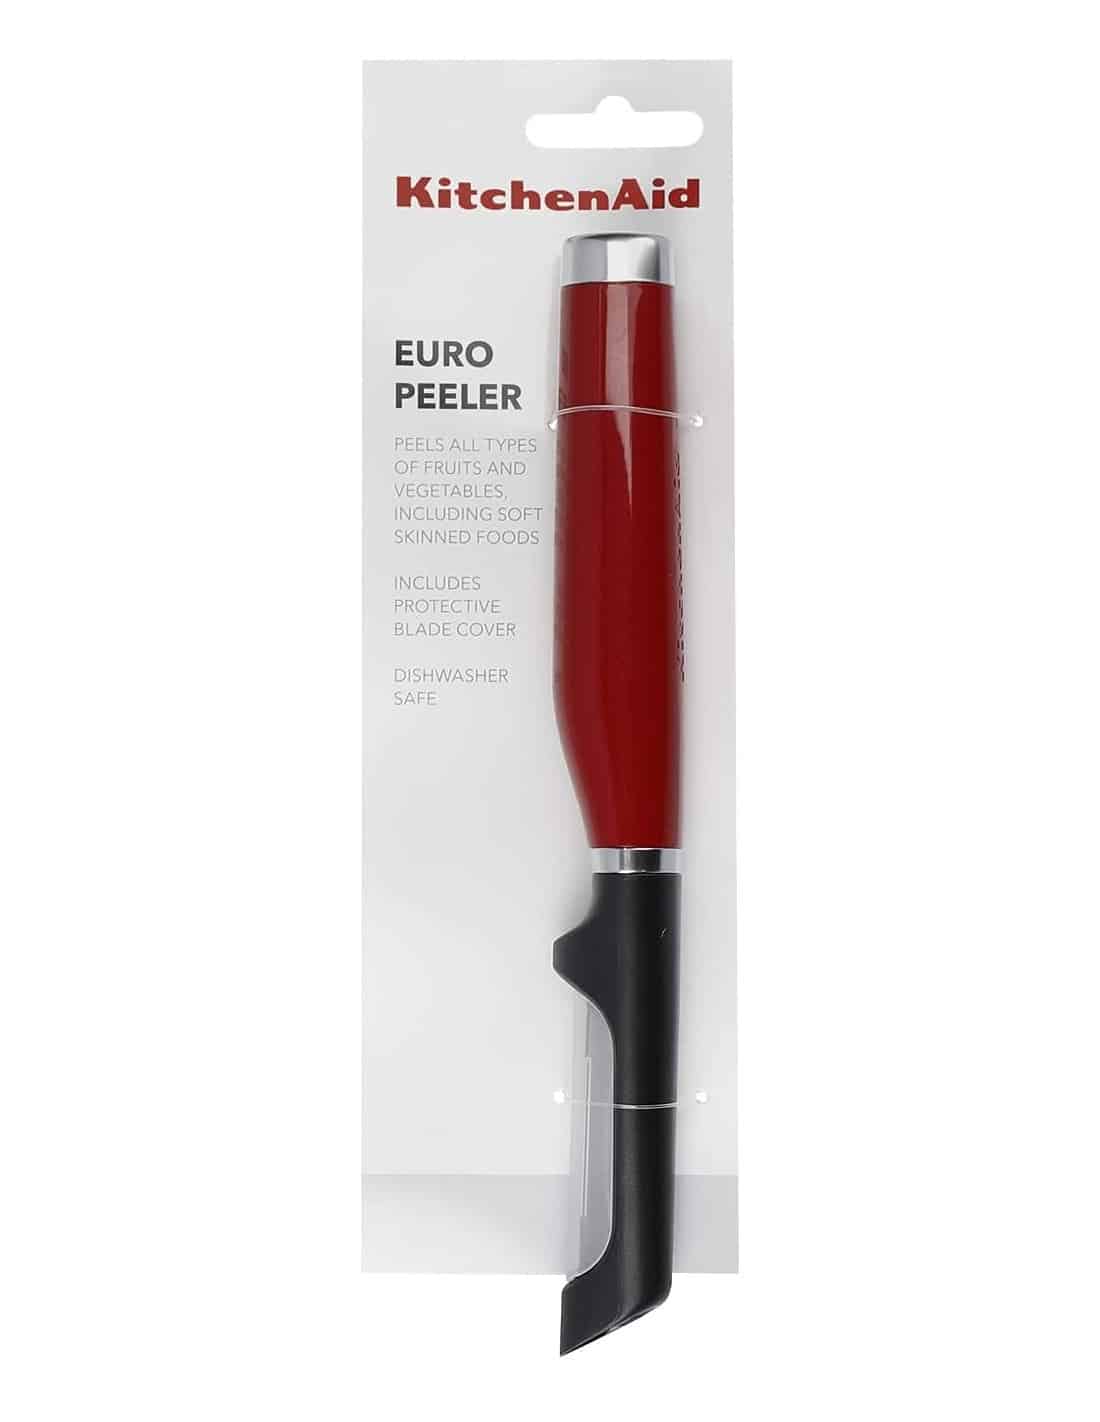 KitchenAid Euro Peeler